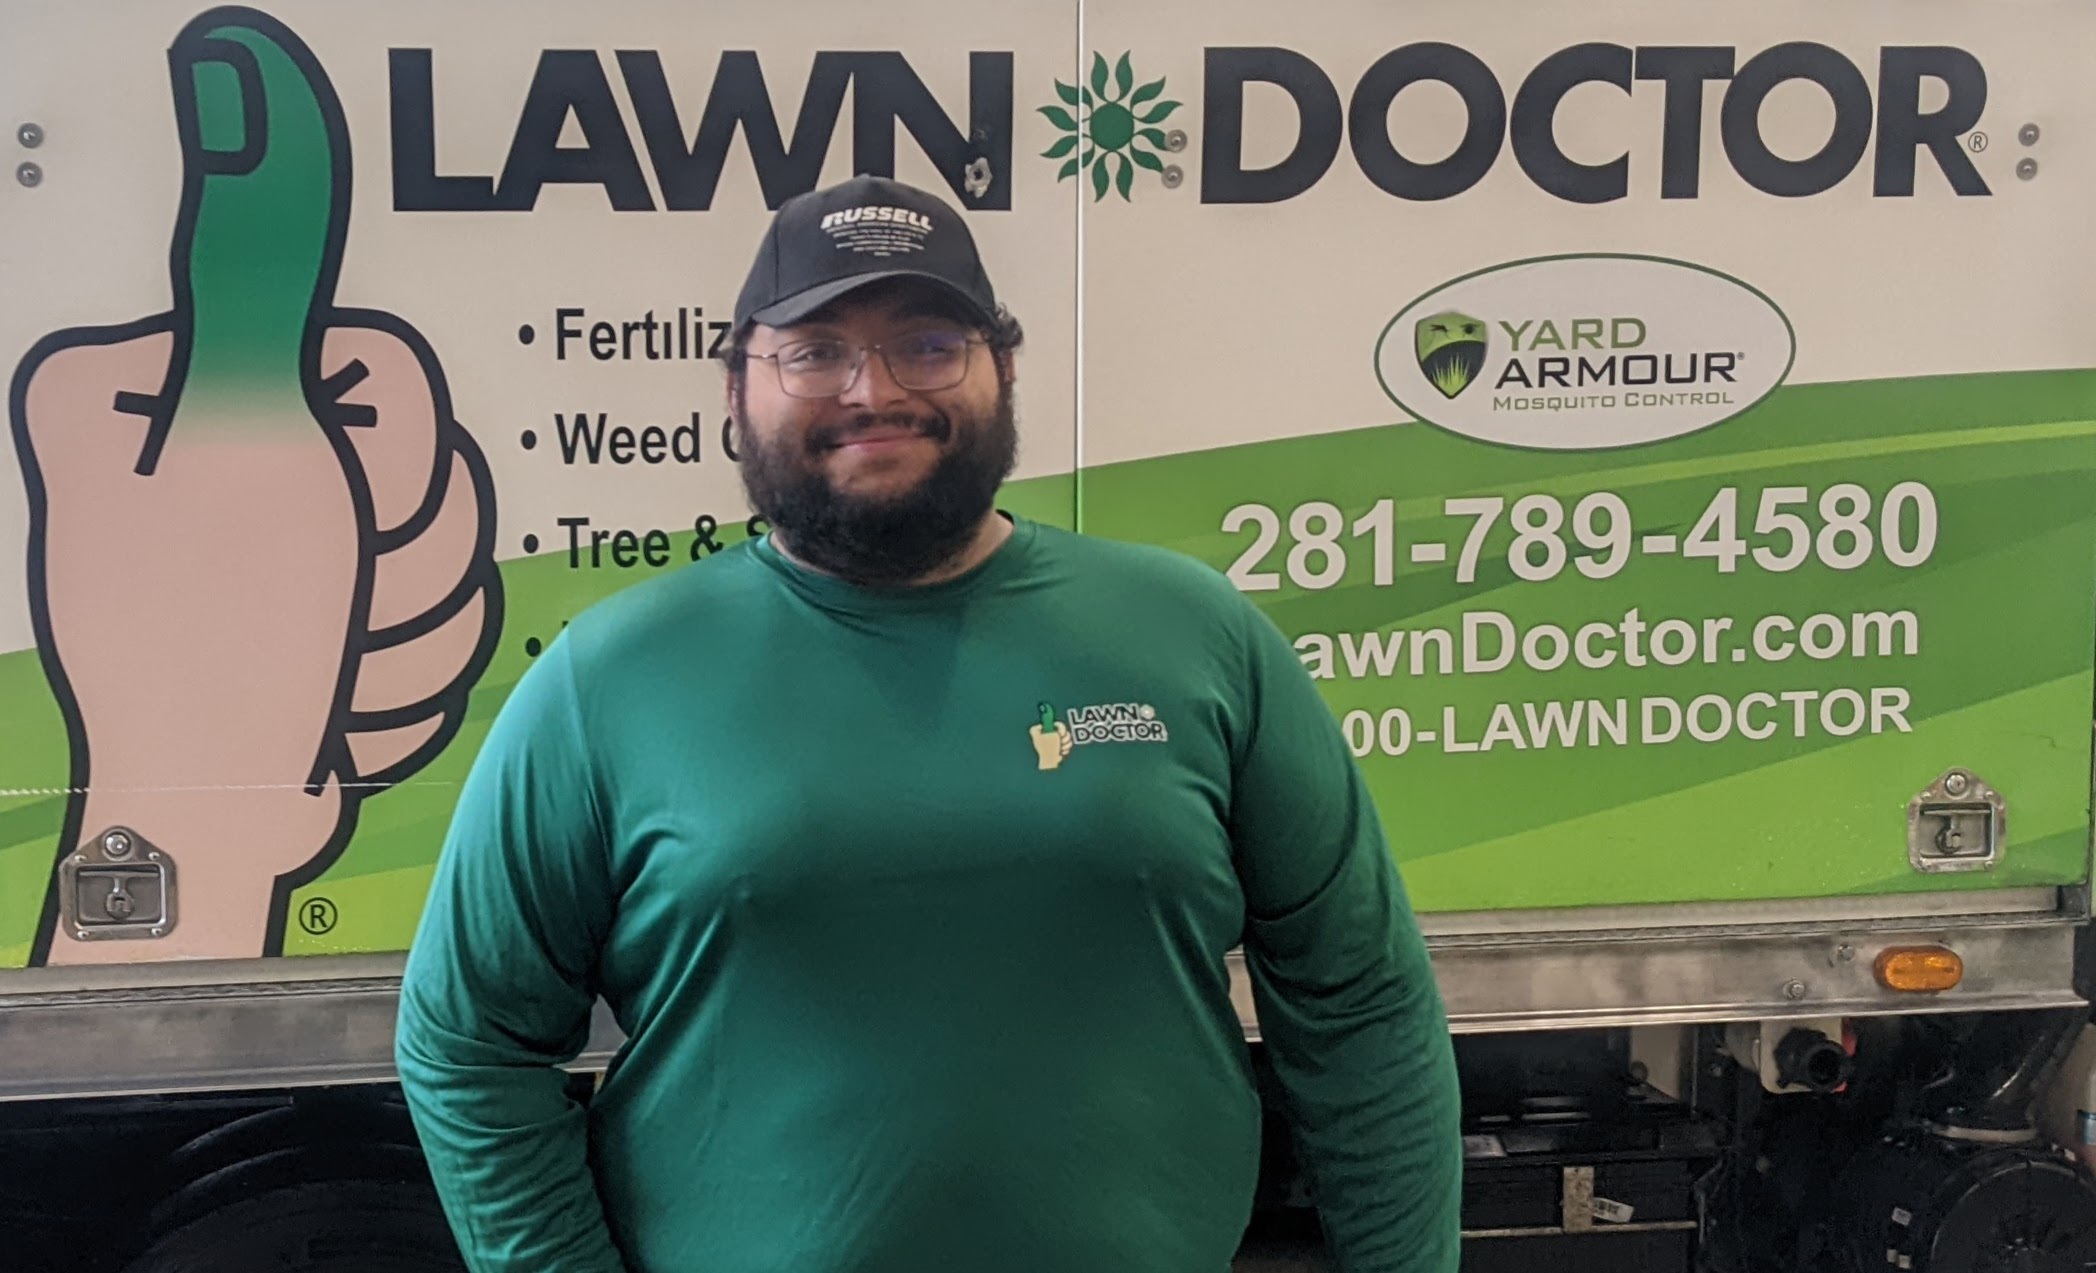 Steve of Lawn Doctor